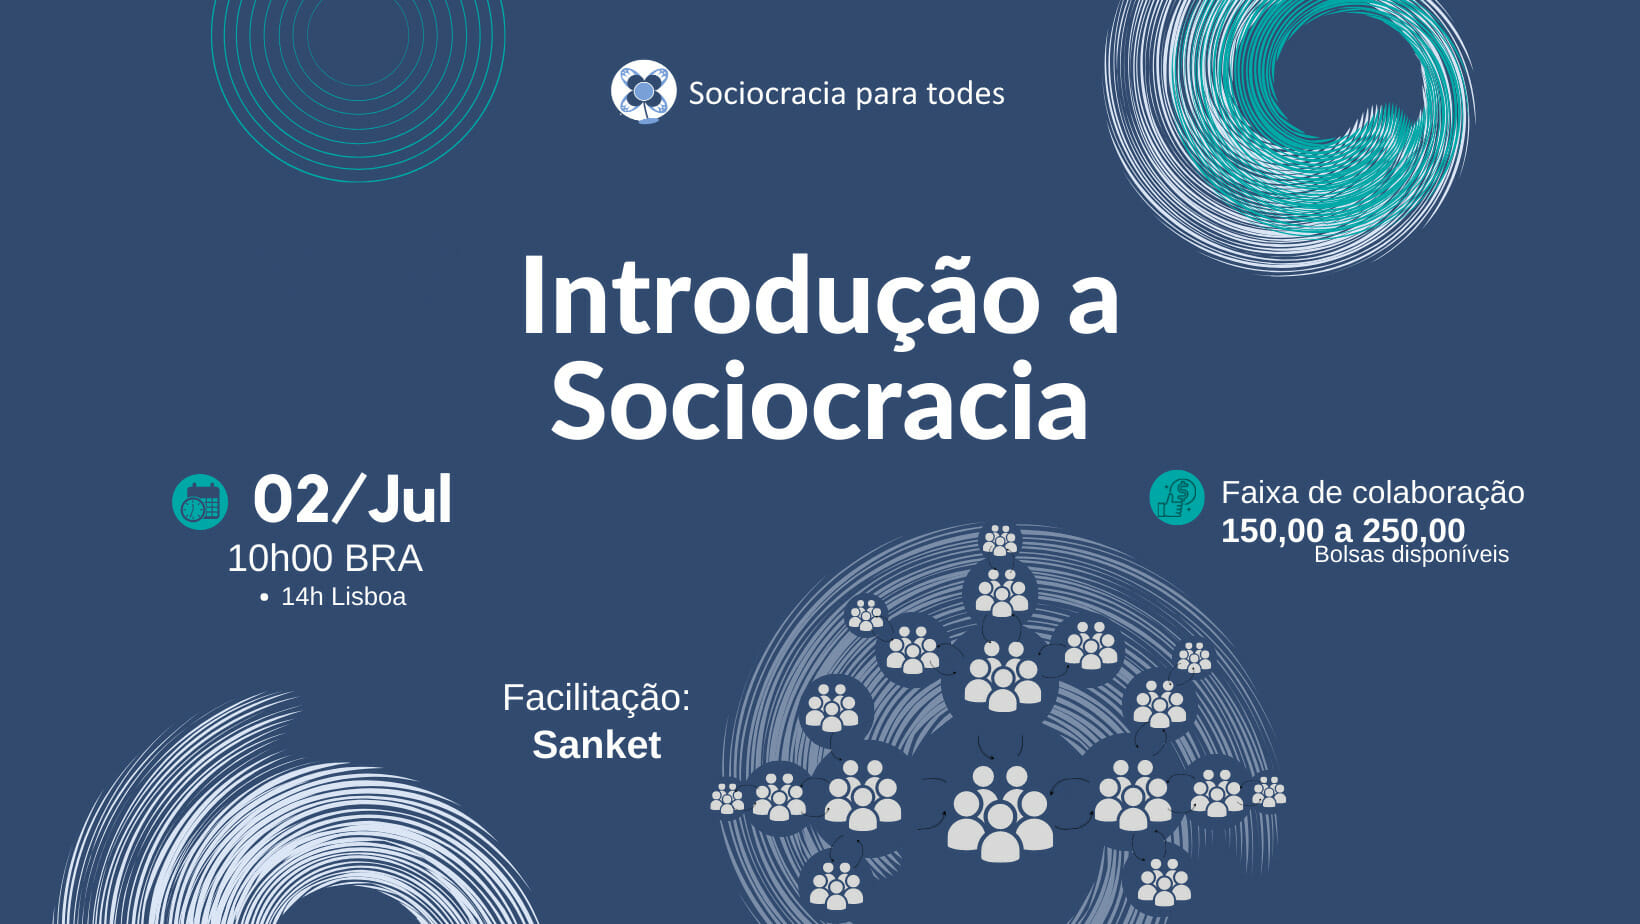 Workshop introdutorio Facebook Cover 1 - Introdução a sociocracia - Sociocracy For All